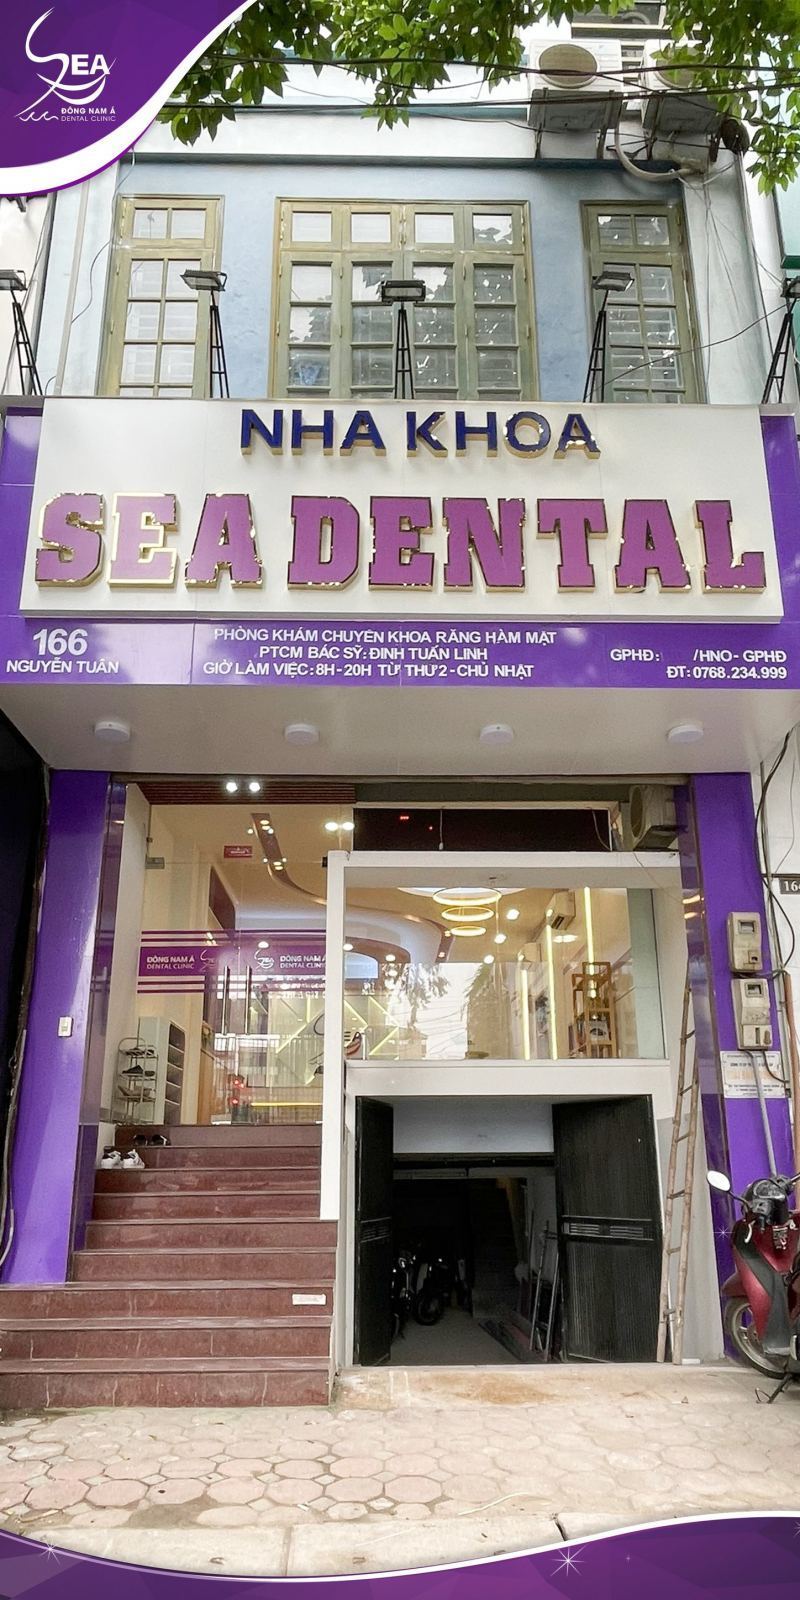 Niềng răng tại Nha nha Sea Dental, khách hàng có thể trả góp với lãi suất 0%, cam kết về hiệu quả và không phát sinh chi phí.